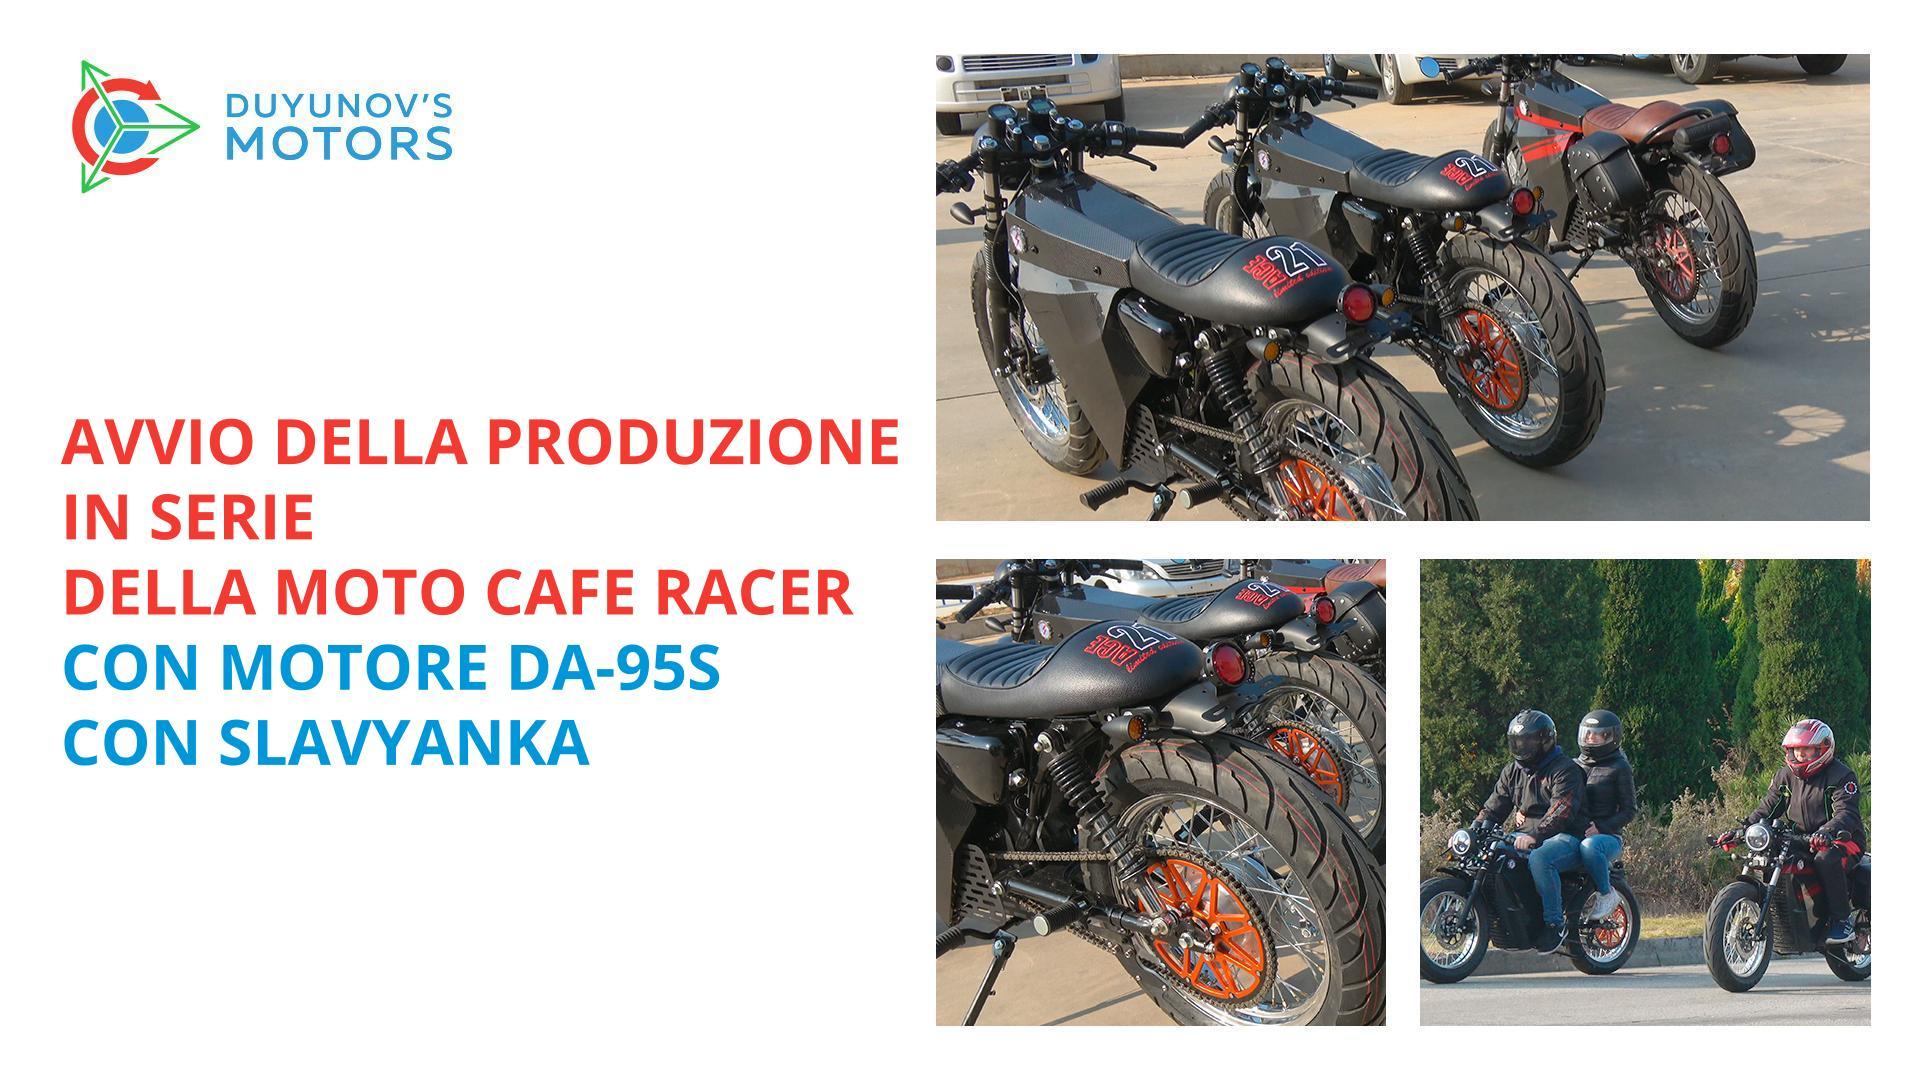 Avvio della produzione in serie della moto Cafe racer con motore DA-95S con tecnologia Slavyanka